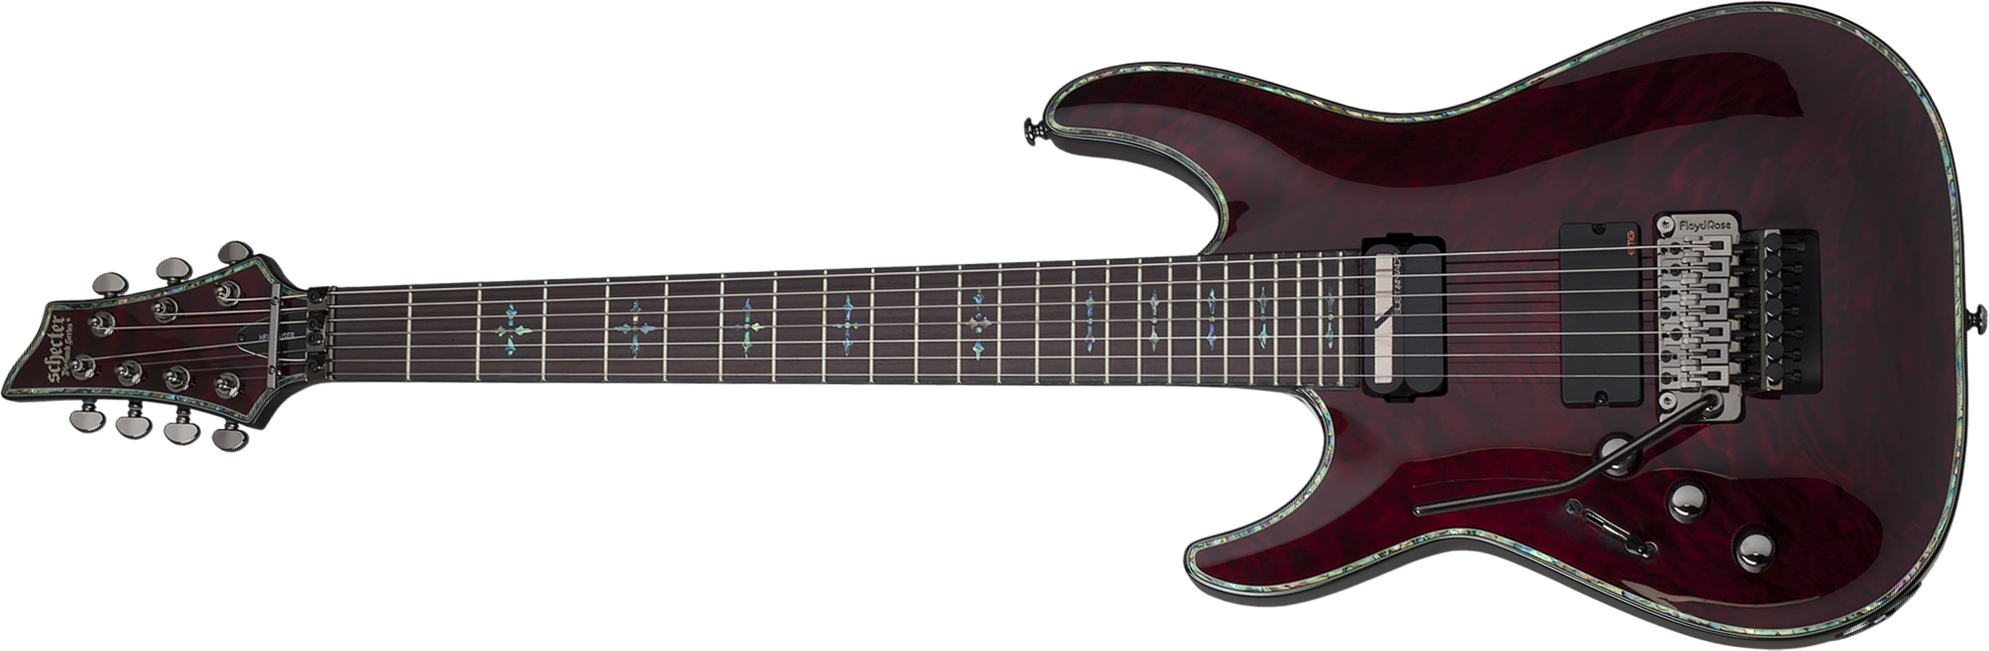 Schecter C-7 Fr S Lh Hellraiser 7c Gaucher 2h Emg Sustainiac Rw - Black Cherry - Linkshandige elektrische gitaar - Main picture